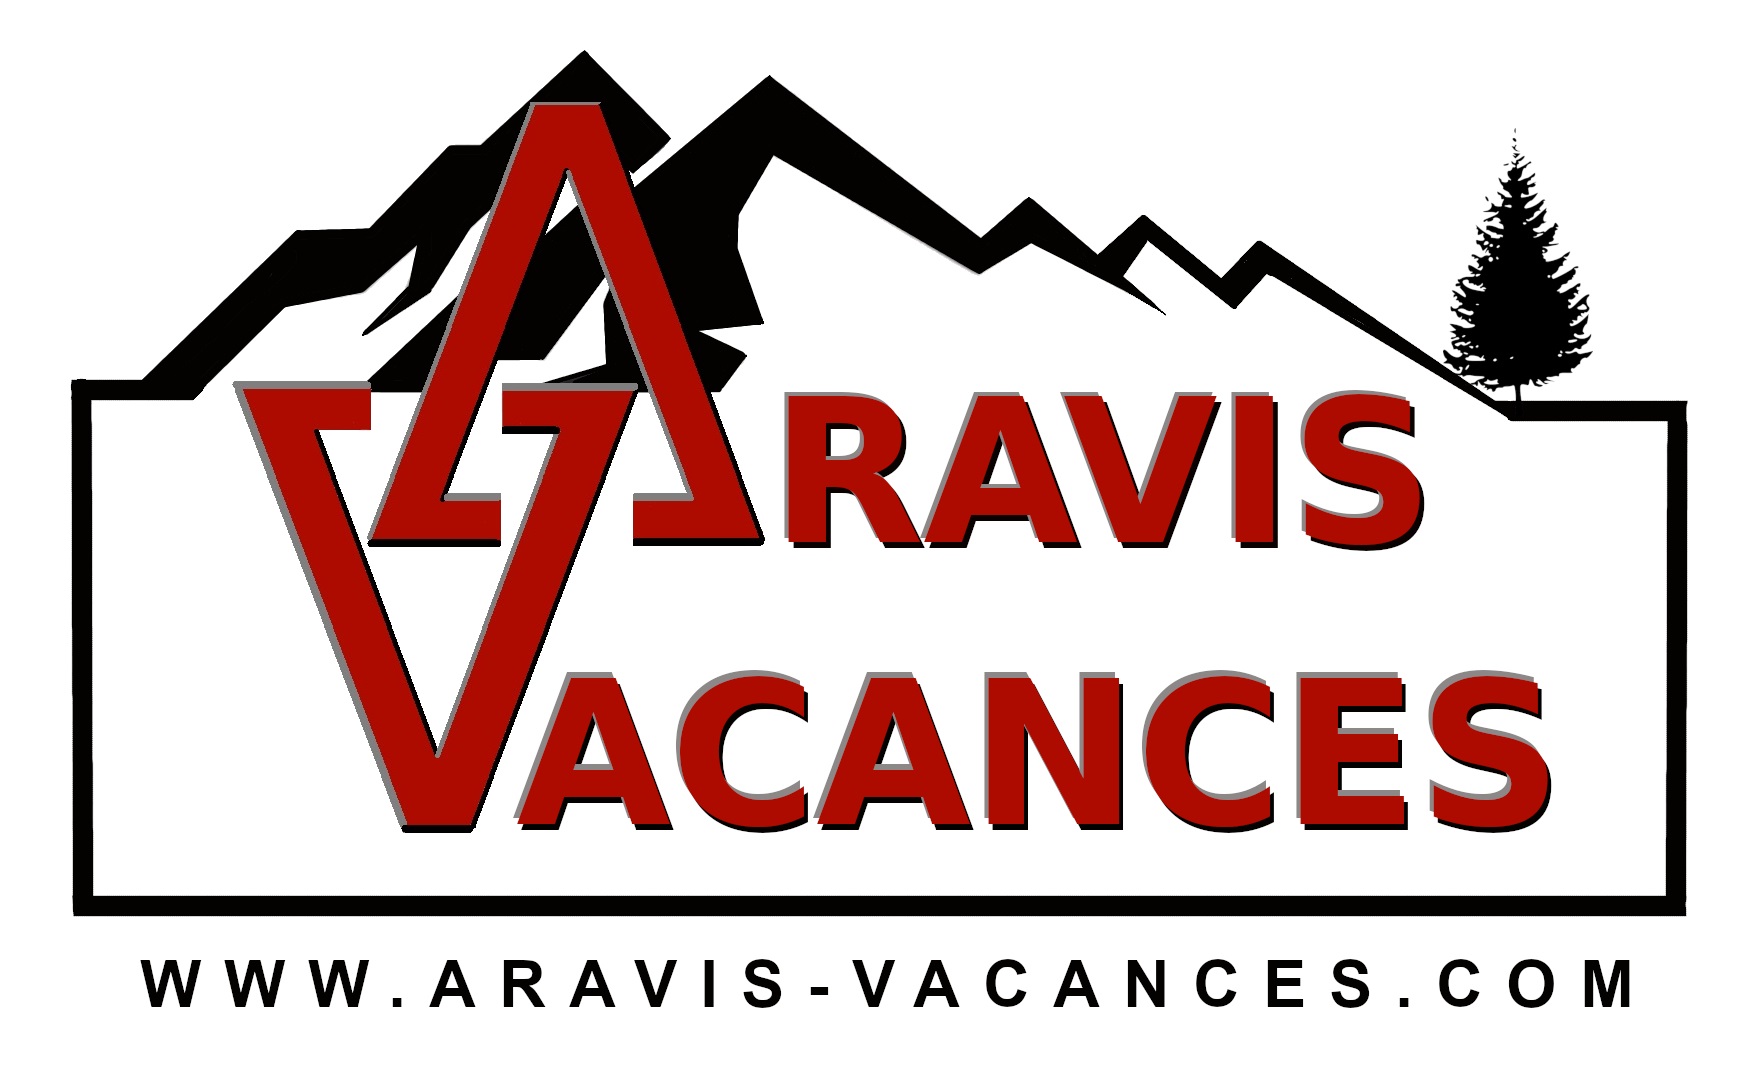 ARAVIS-VACANCES.COM